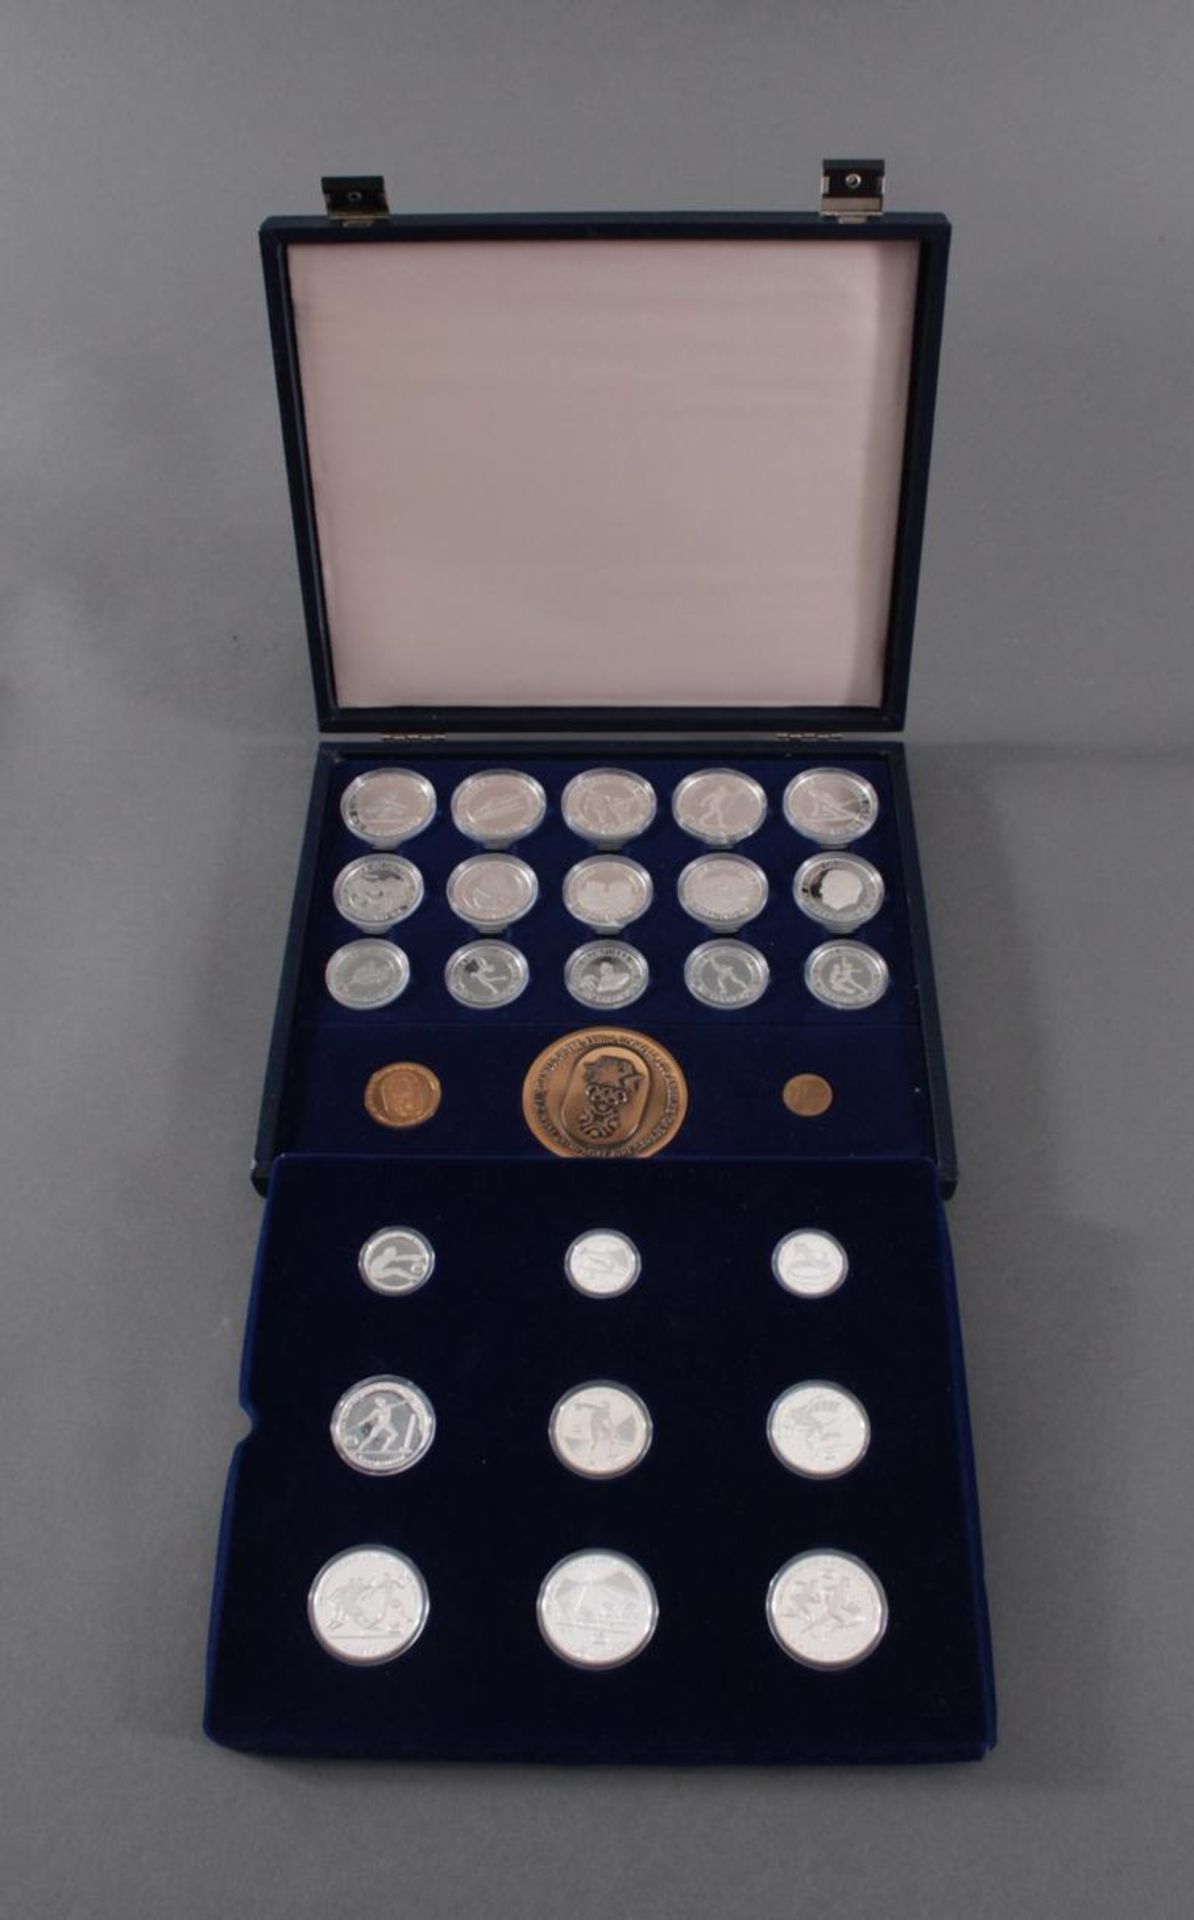 Griechenland, Olympische Spiele 1984, Silbermünzen in PP, Leichtathletik24 Silbermünzen in PP, in - Bild 3 aus 6